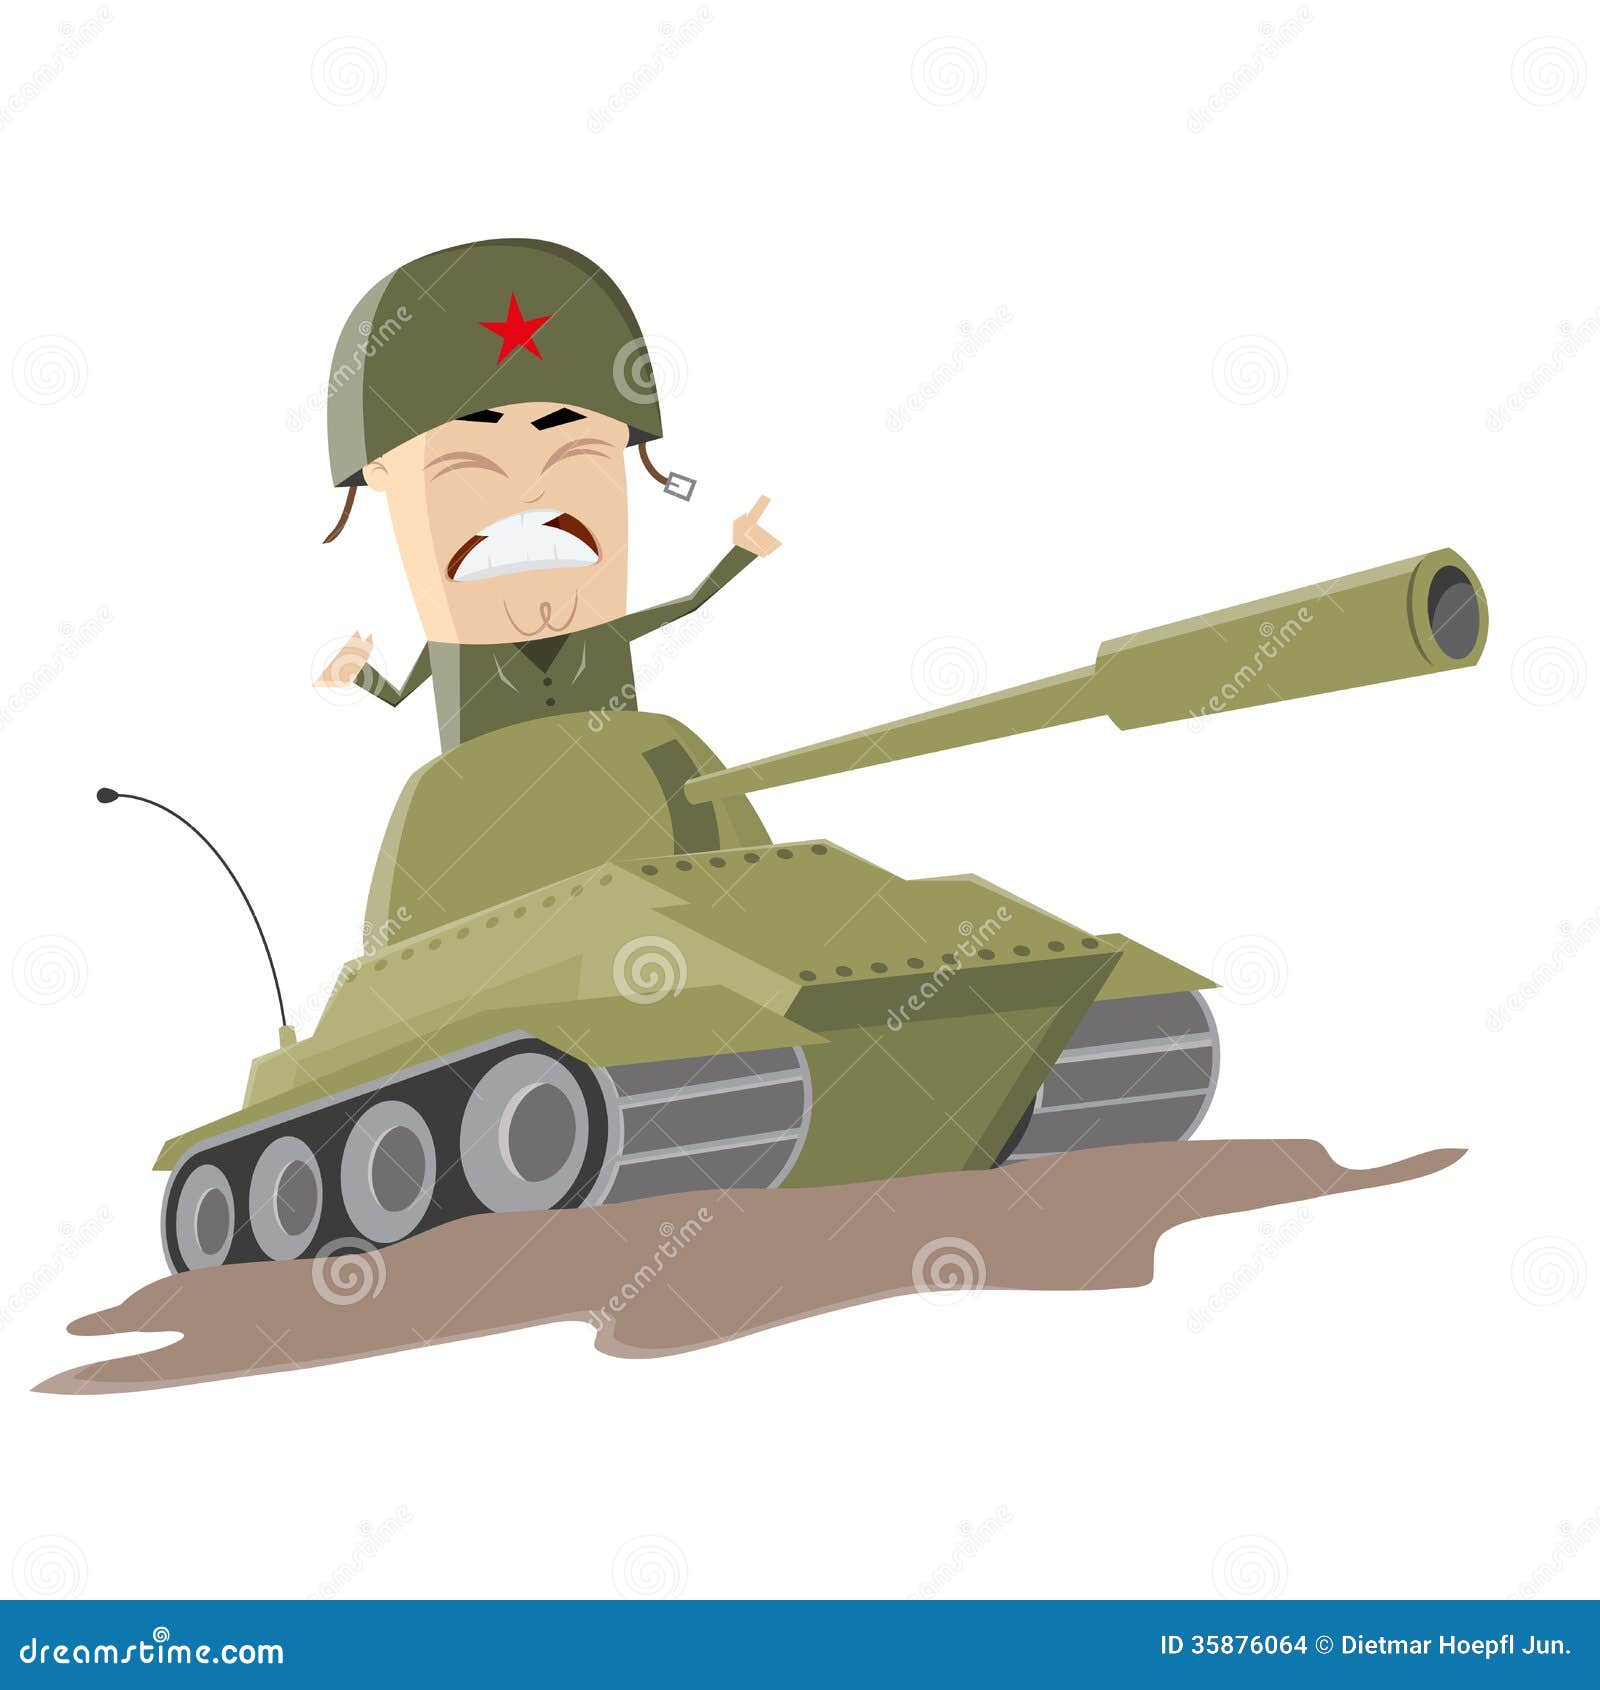 asian-cartoon-soldier-tank-illustration-35876064.jpg